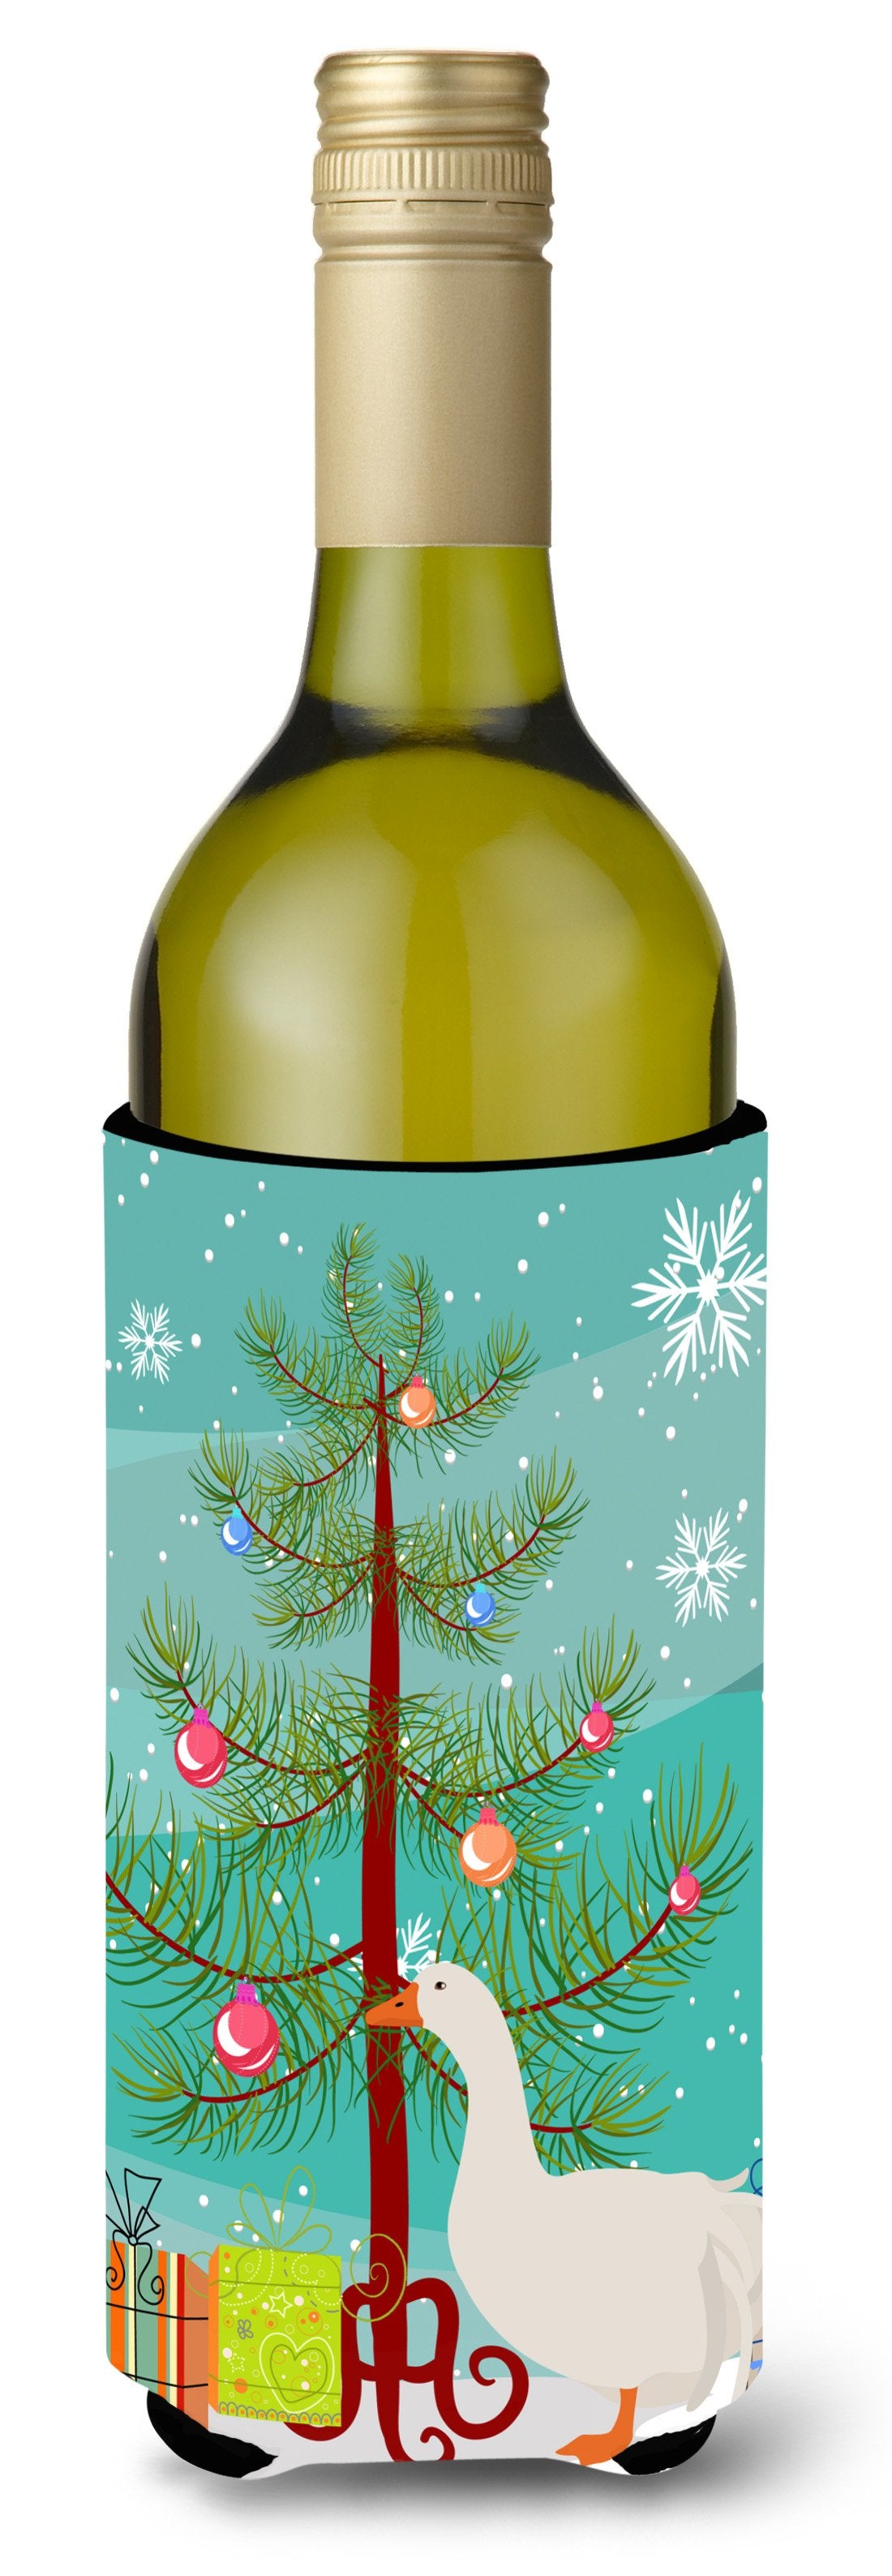 Sebastopol Goose Christmas Wine Bottle Beverge Insulator Hugger BB9269LITERK by Caroline's Treasures